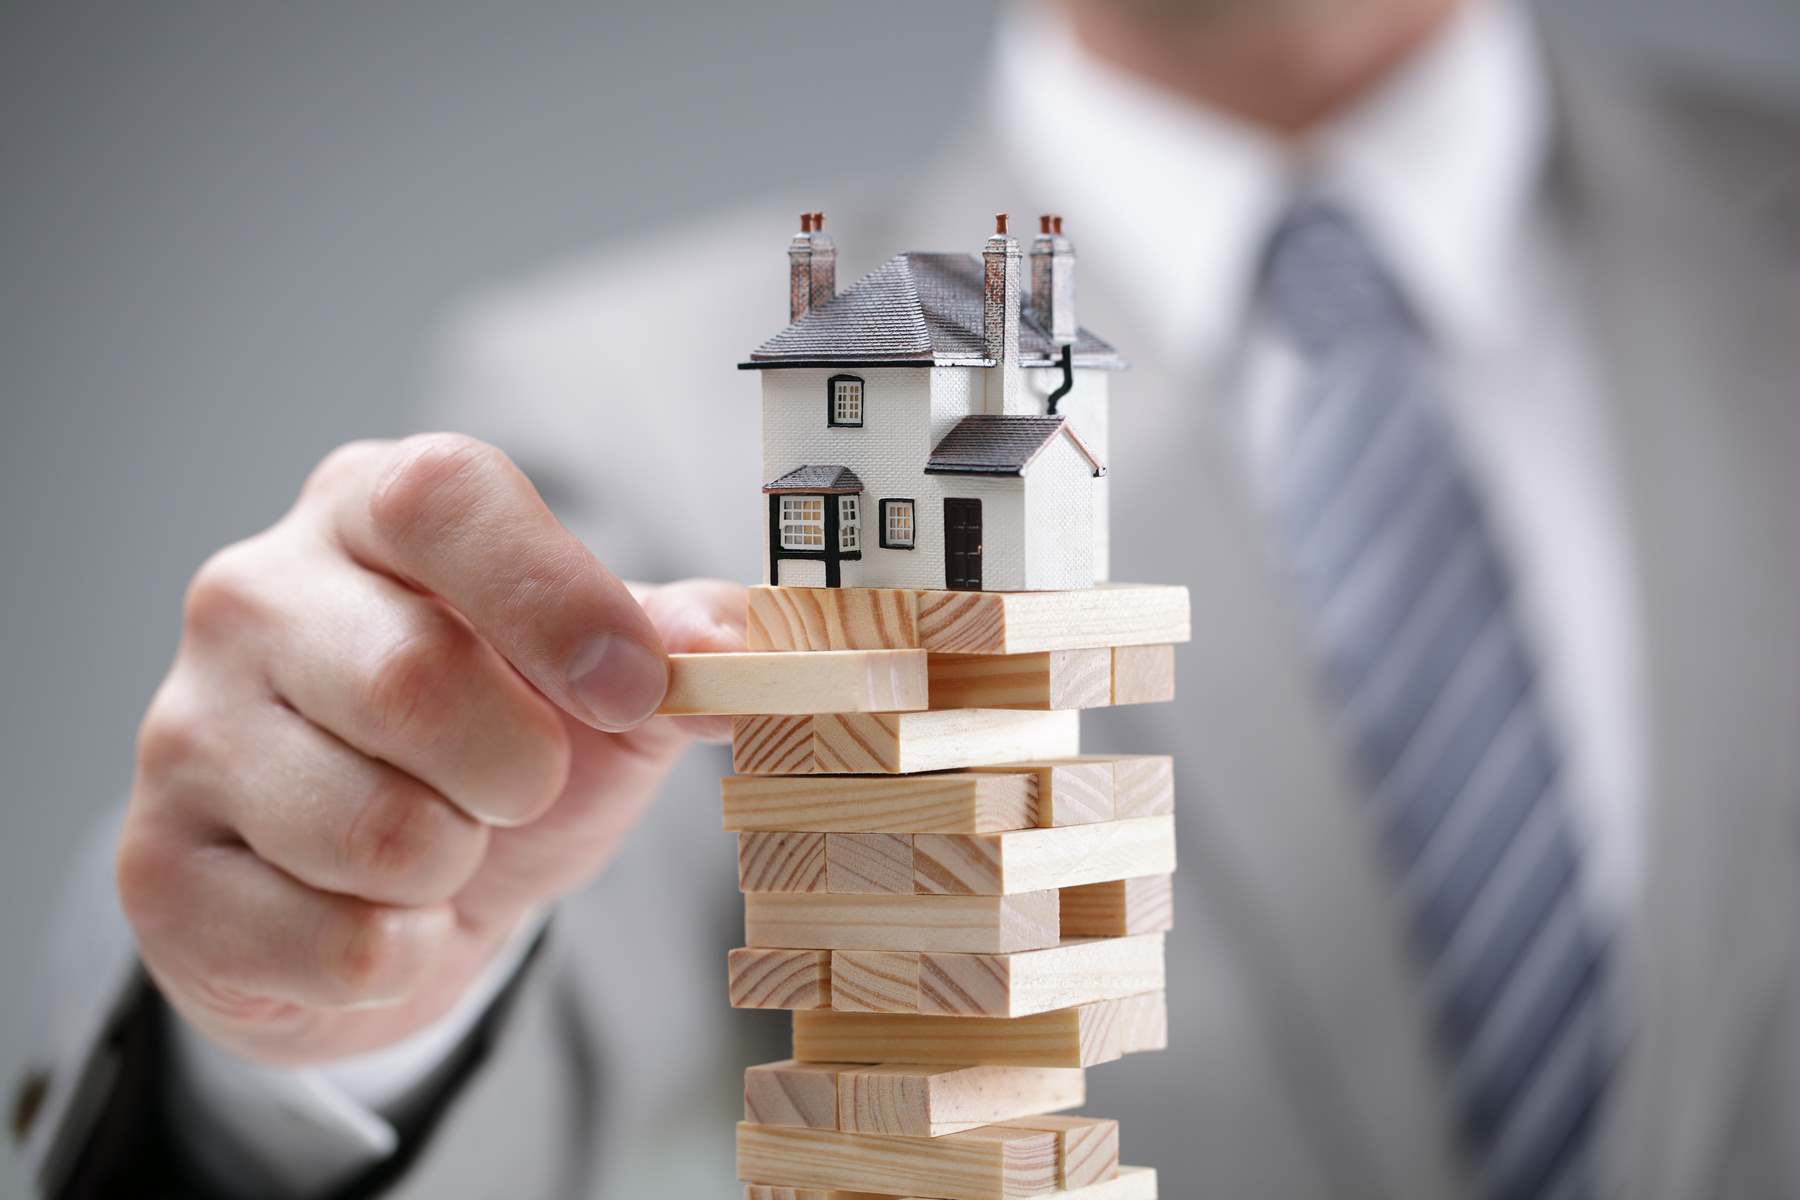 Рискованные сделки с недвижимостью